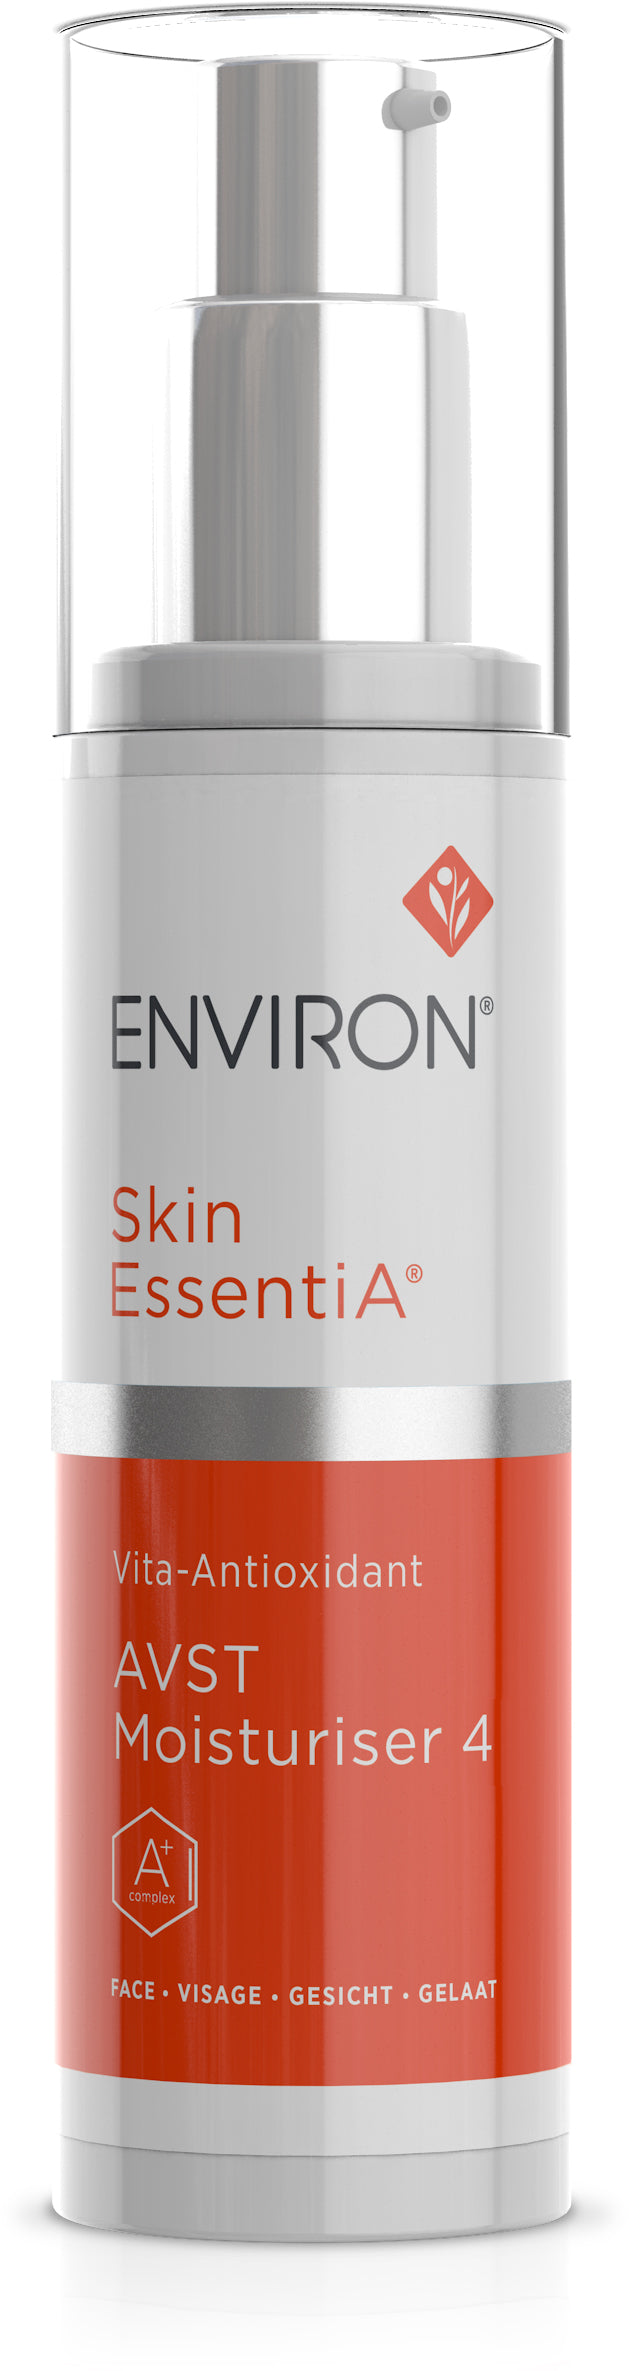 Skin EssentiA | Vita-Antioxidant | AVST Moisturiser 4